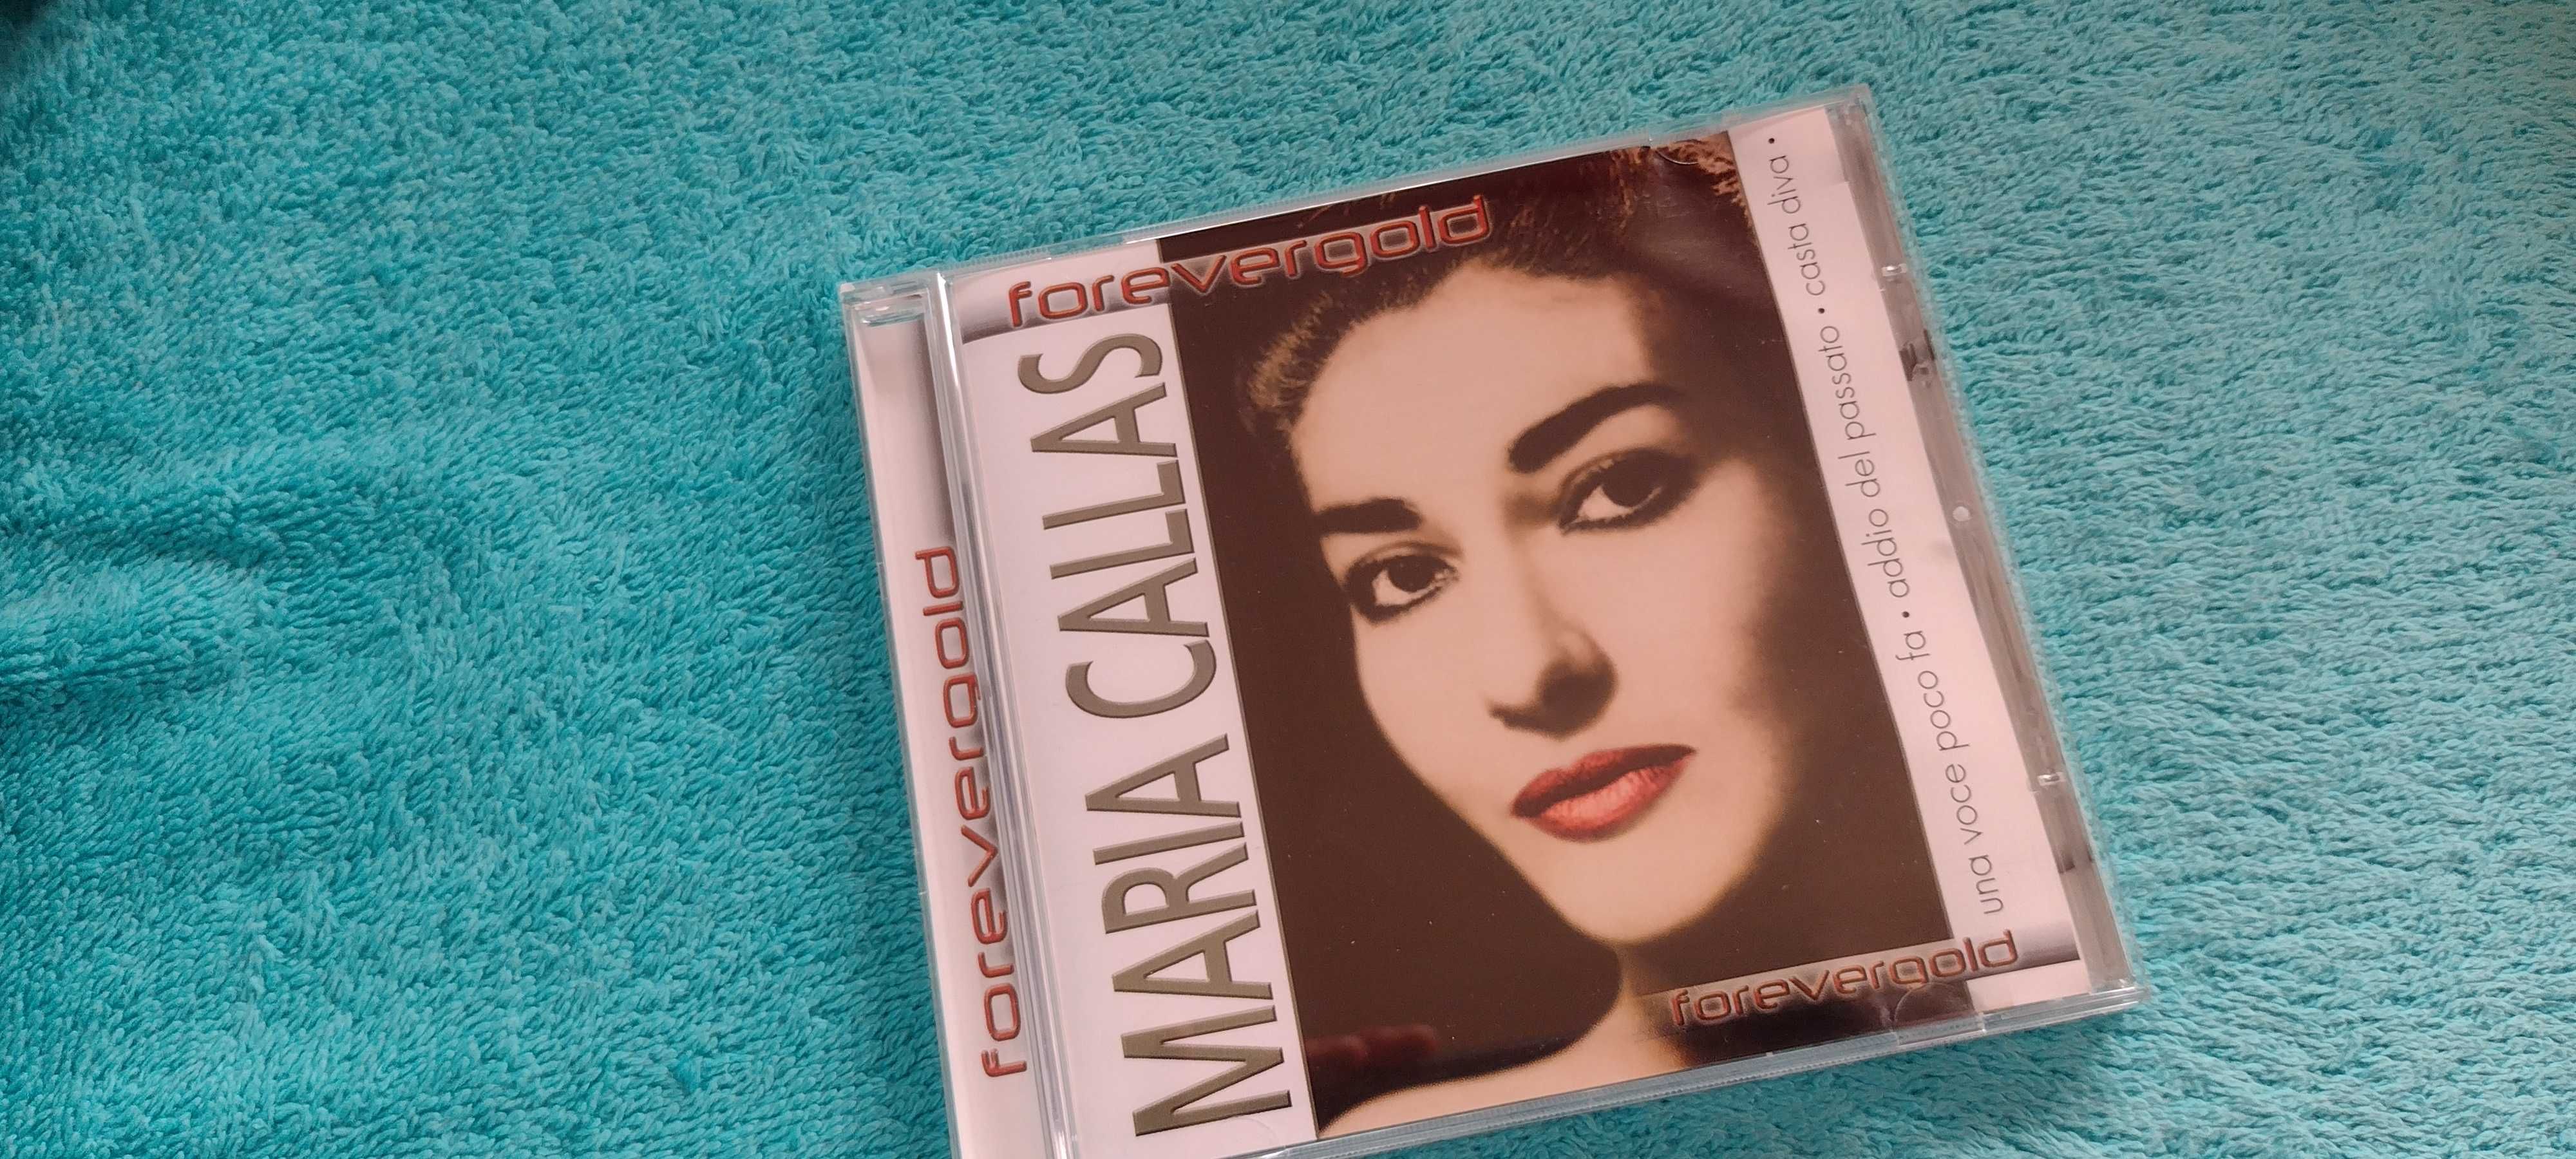 Płyta CD Maria Callas The Golden Voice